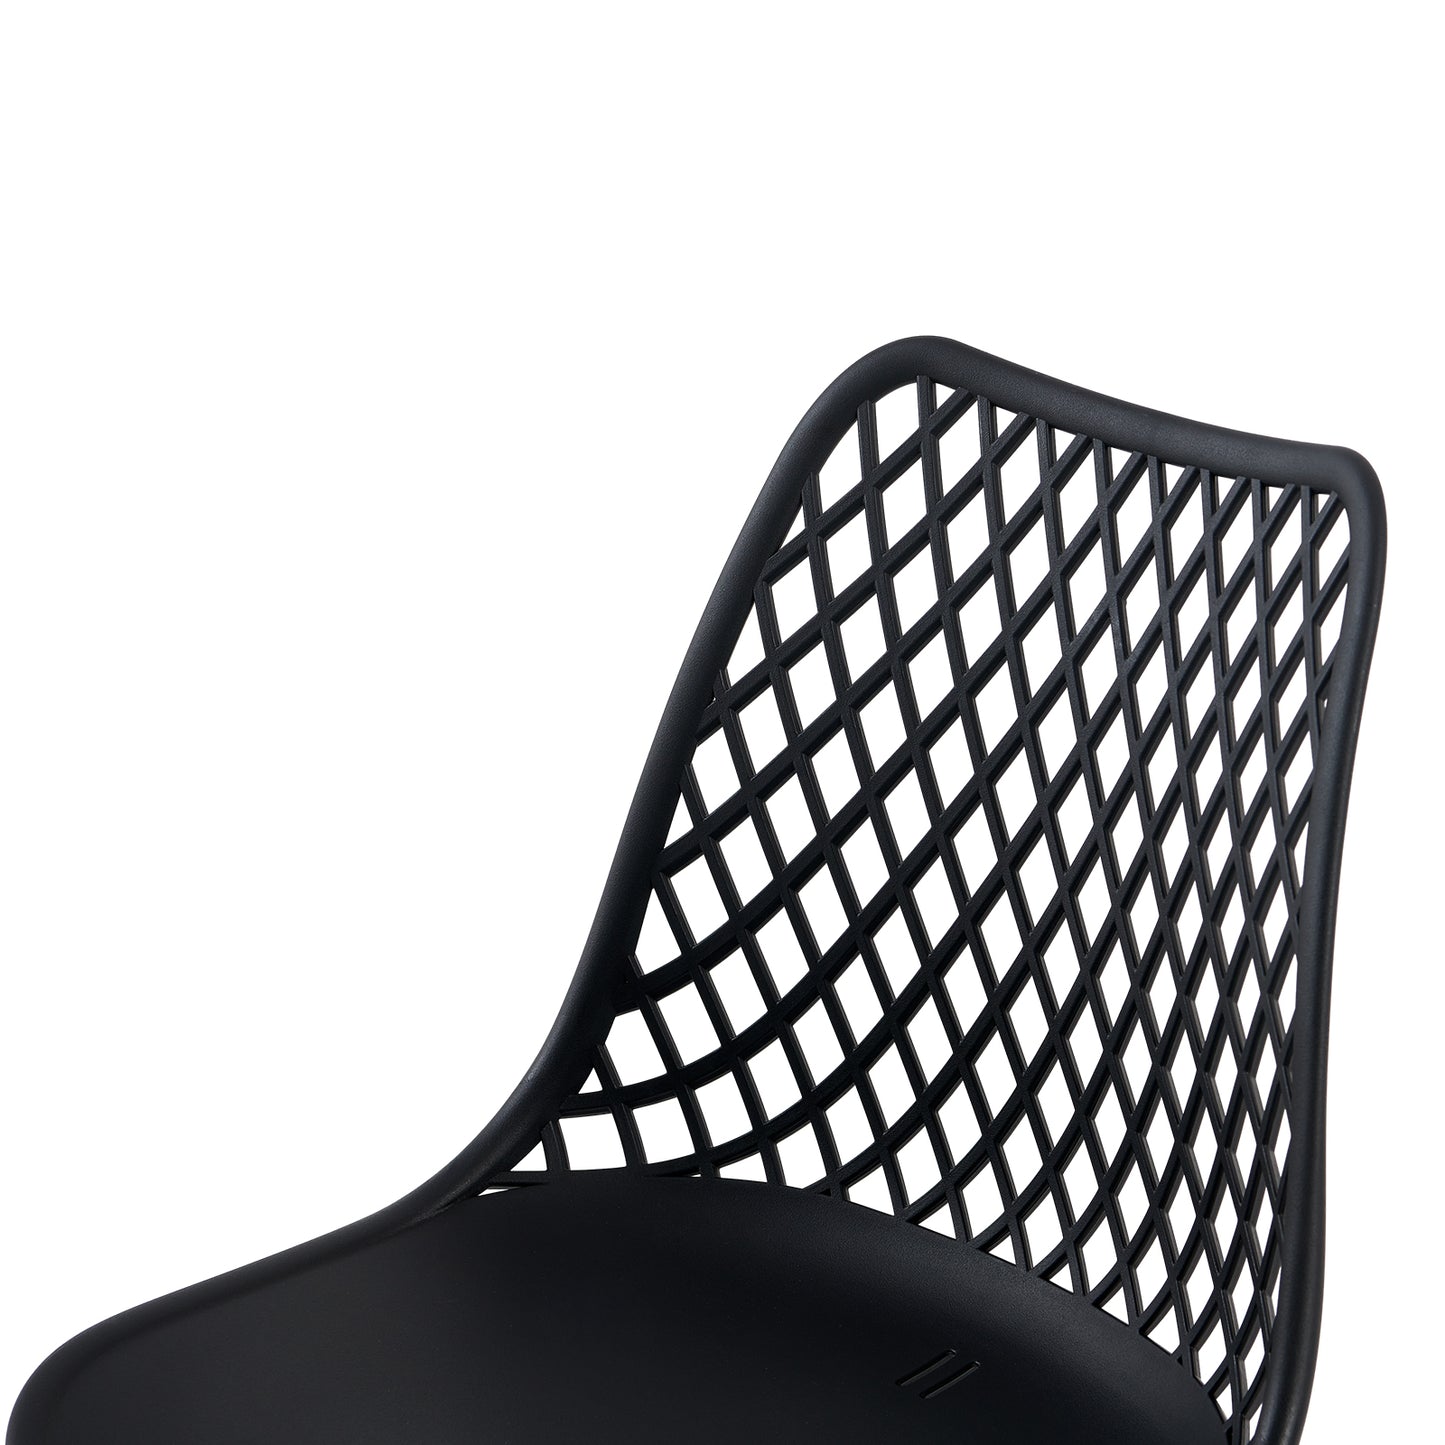 Lot de 2 Chaises Design Plastique Scandinave Chaise de Salle à manger - Noir